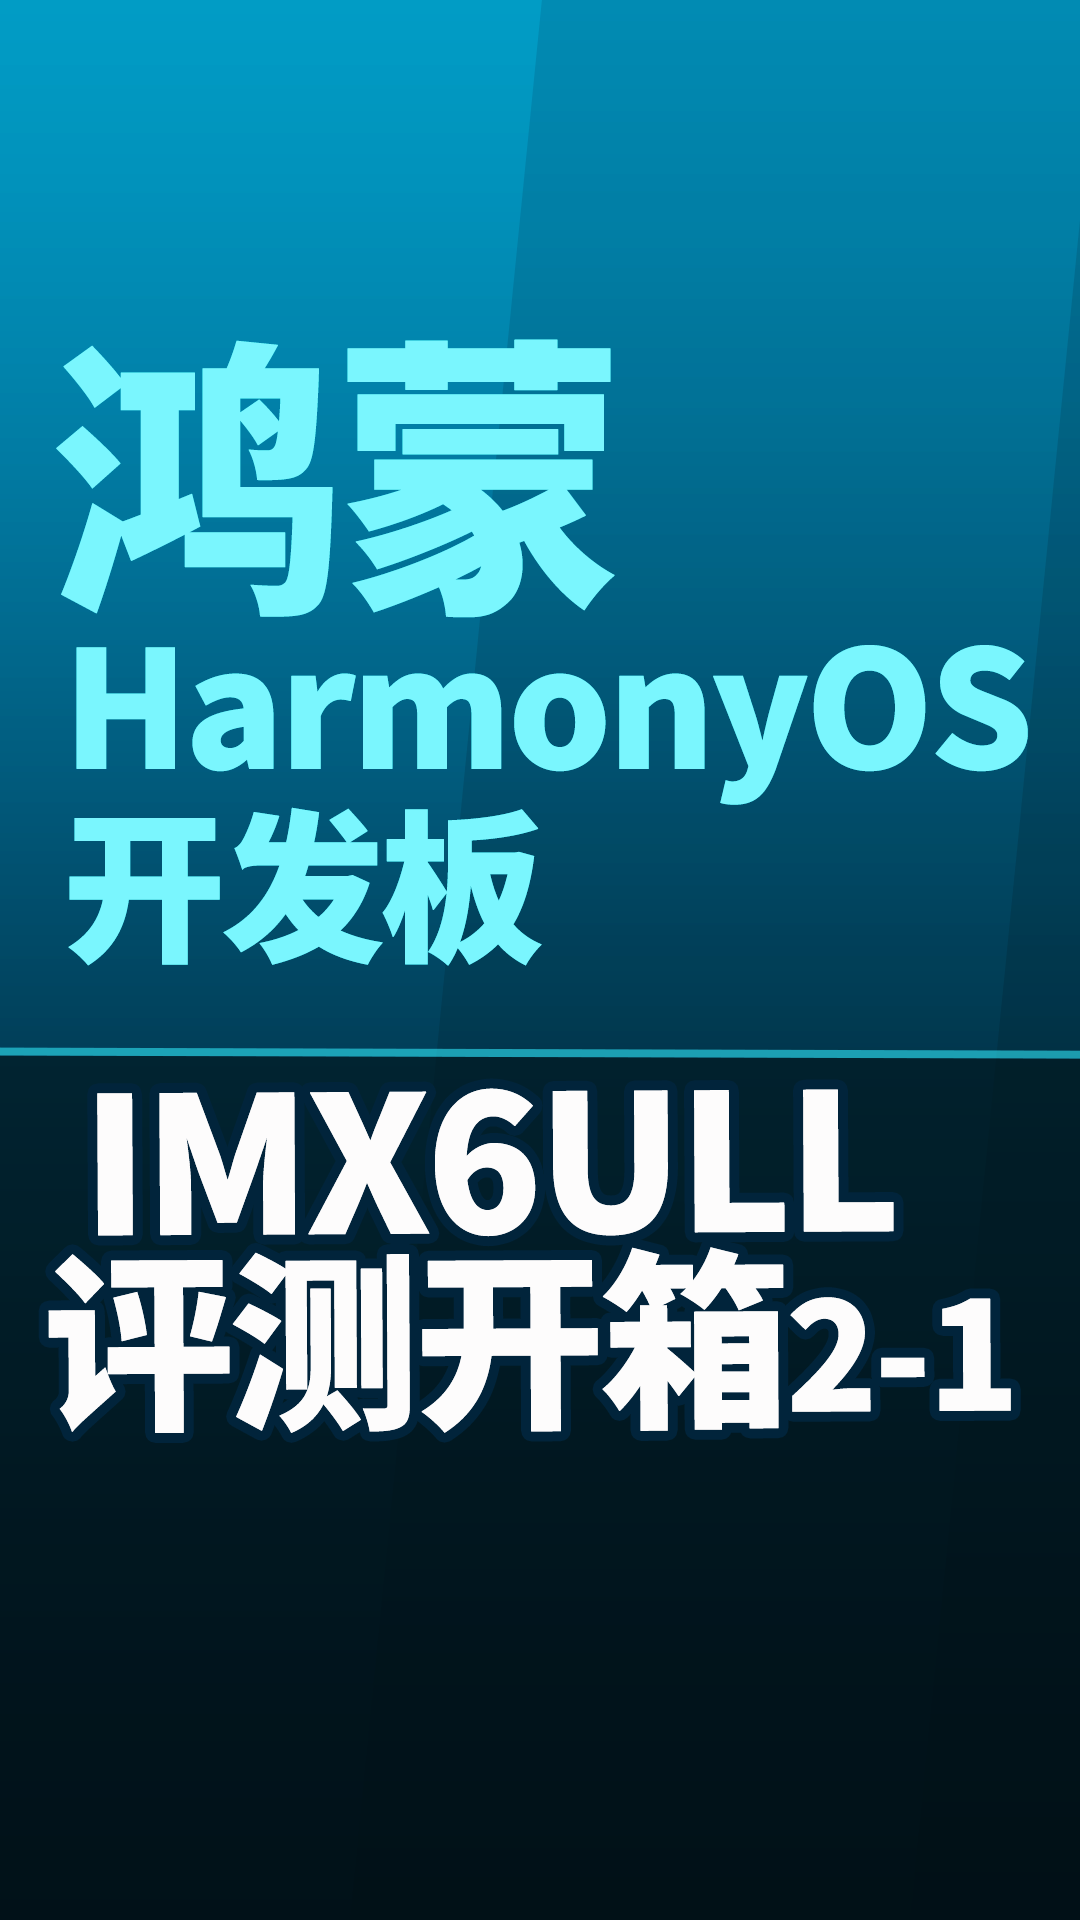 【鸿蒙评测开箱】鸿蒙 HarmonyOS 开发板 IMX6ULL 评测开箱2-1#嵌入式开发 